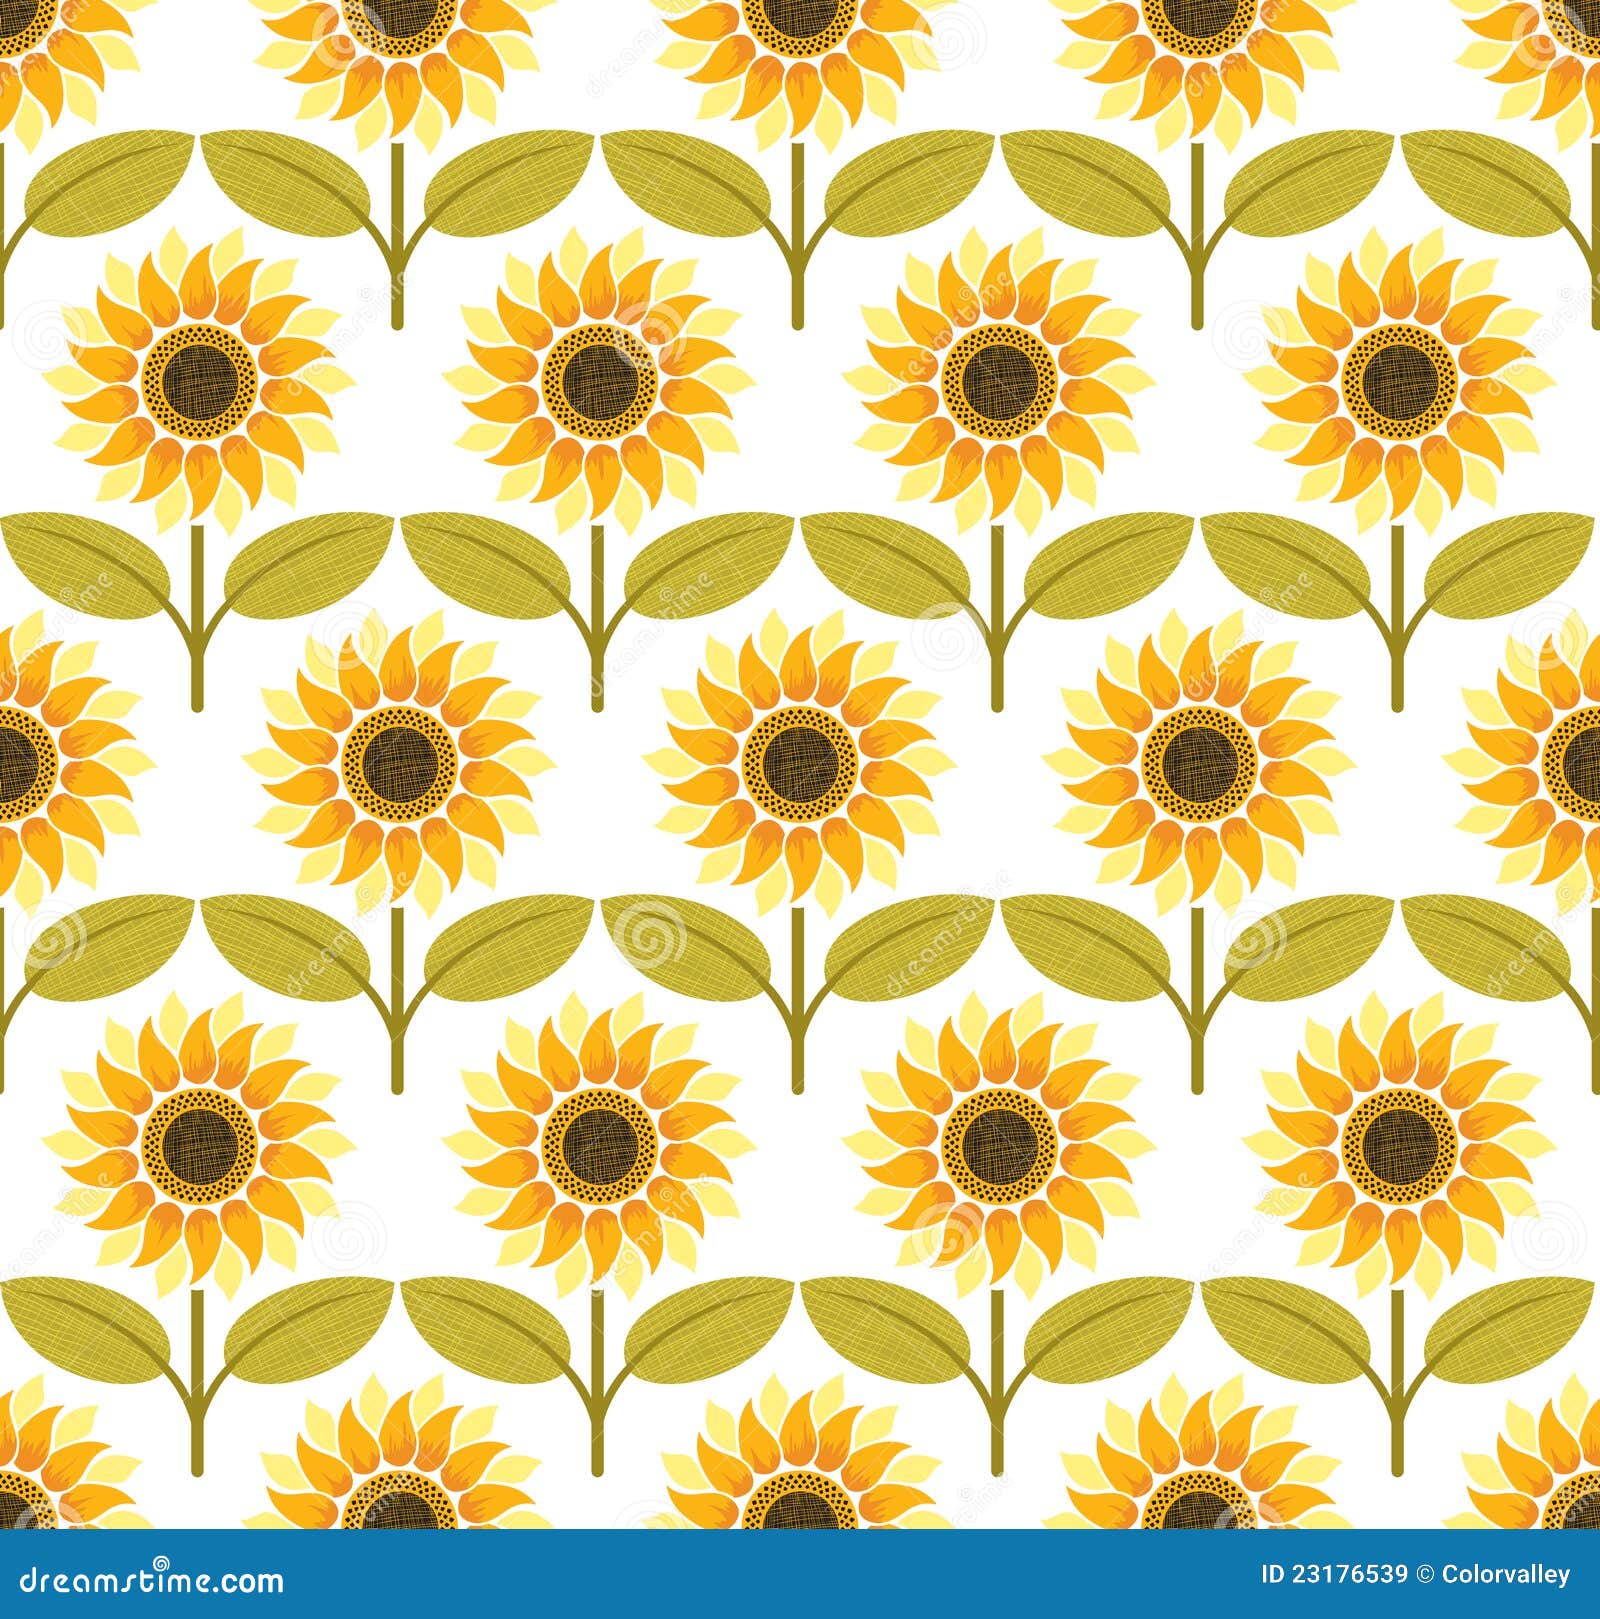 Eleletsitz Sunflowers Drawing Tumblr Images